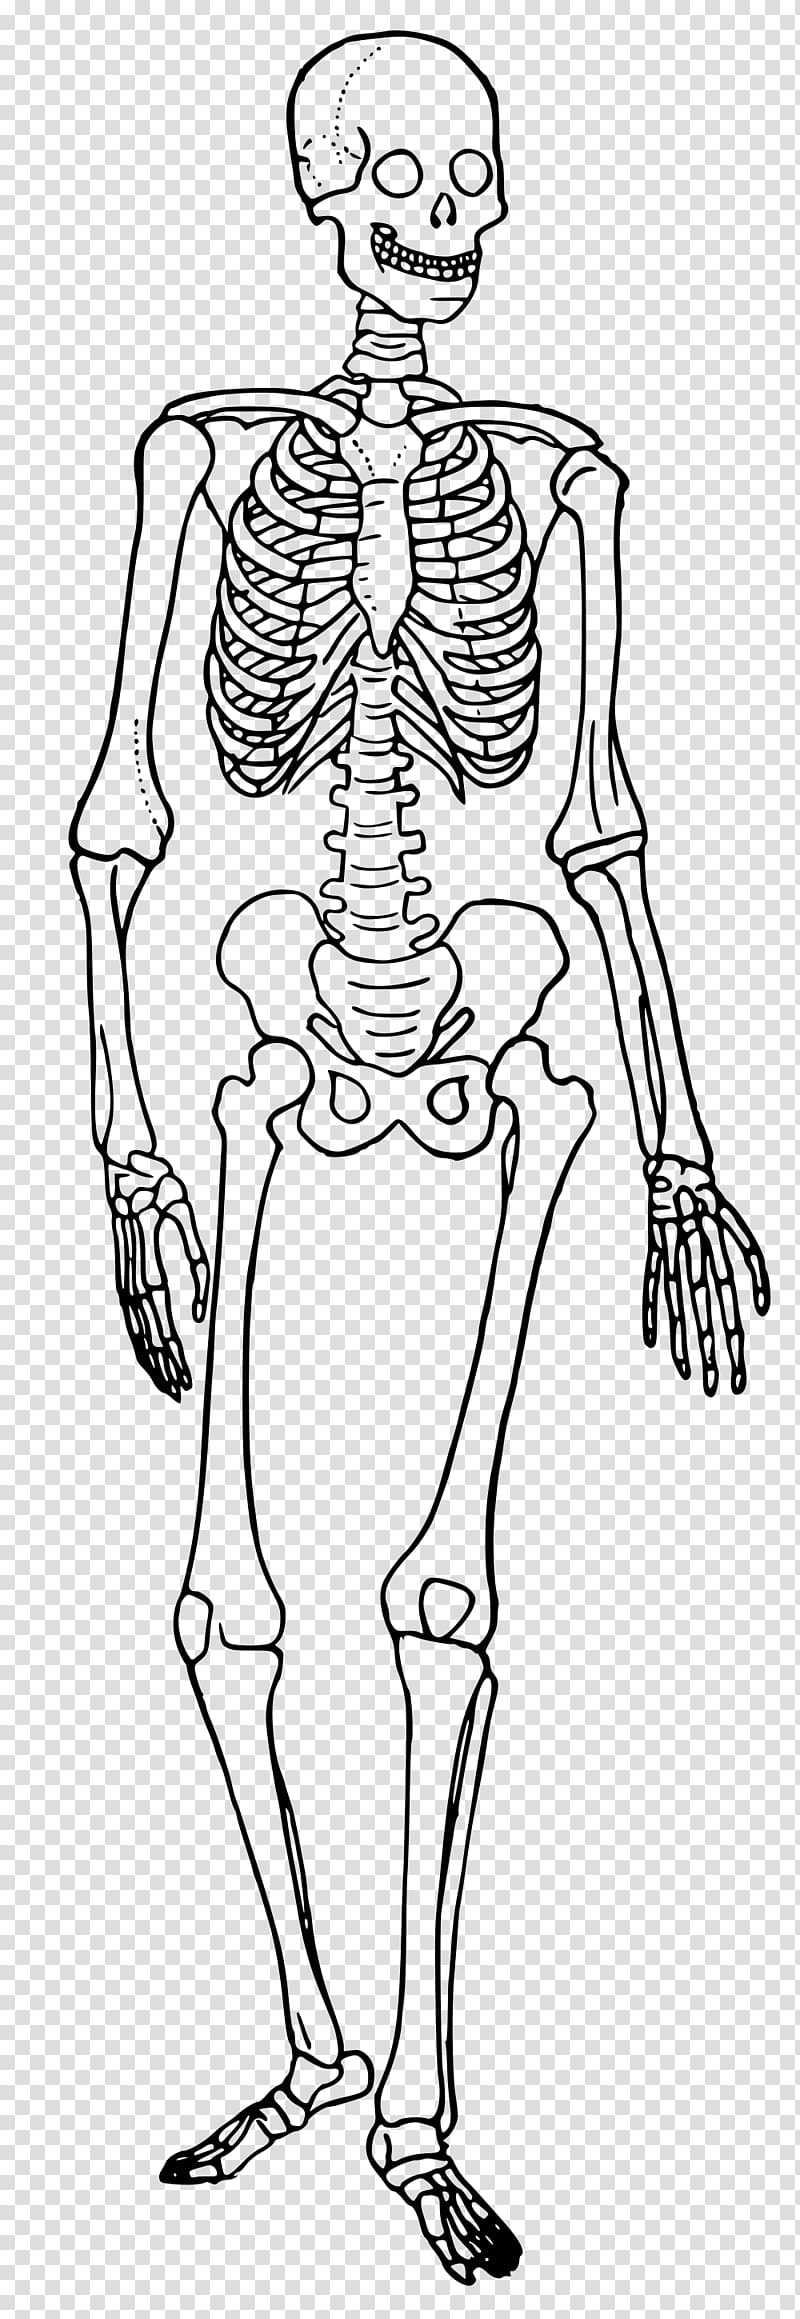 The Skeletal System Human skeleton Human body Diagram Bone, Skeleton transparent background PNG clipart